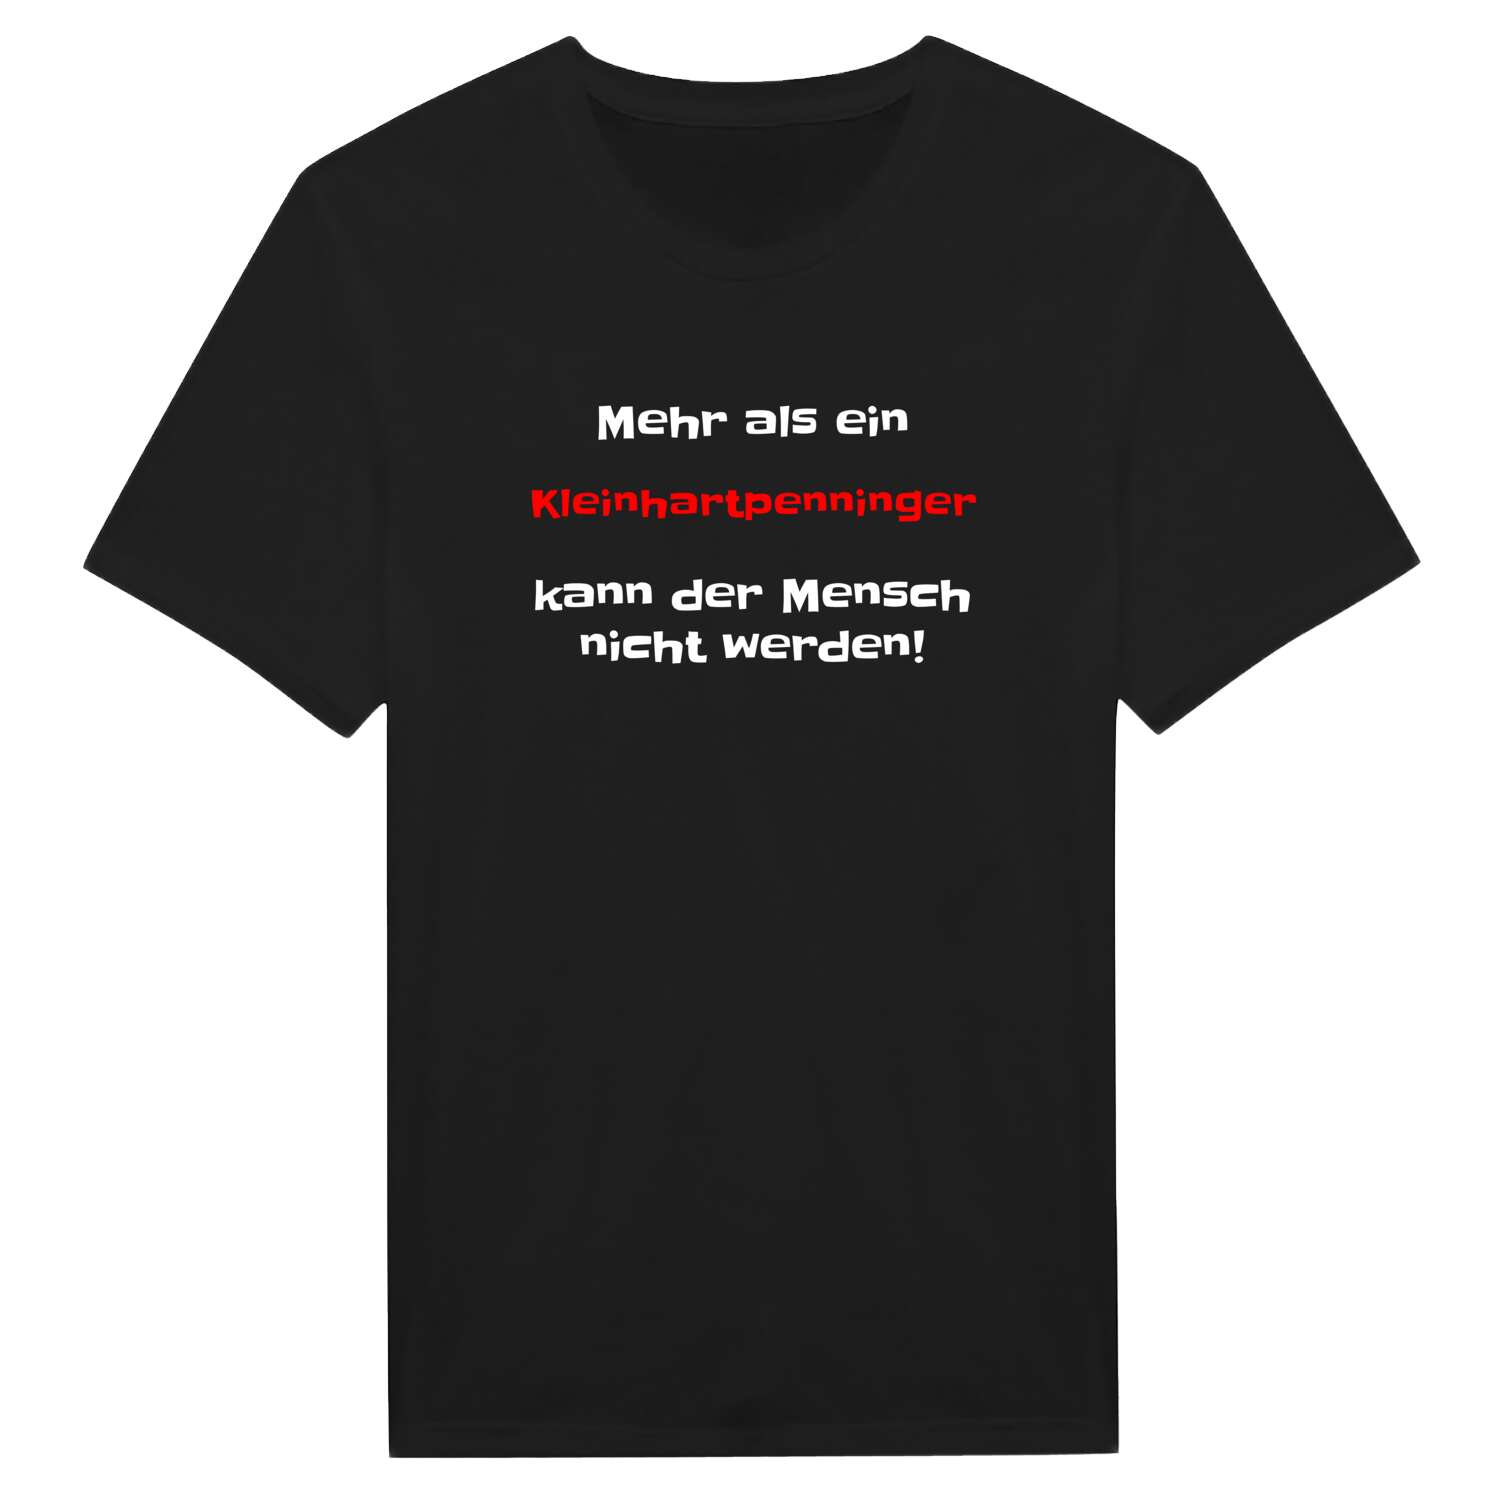 Kleinhartpenning T-Shirt »Mehr als ein«